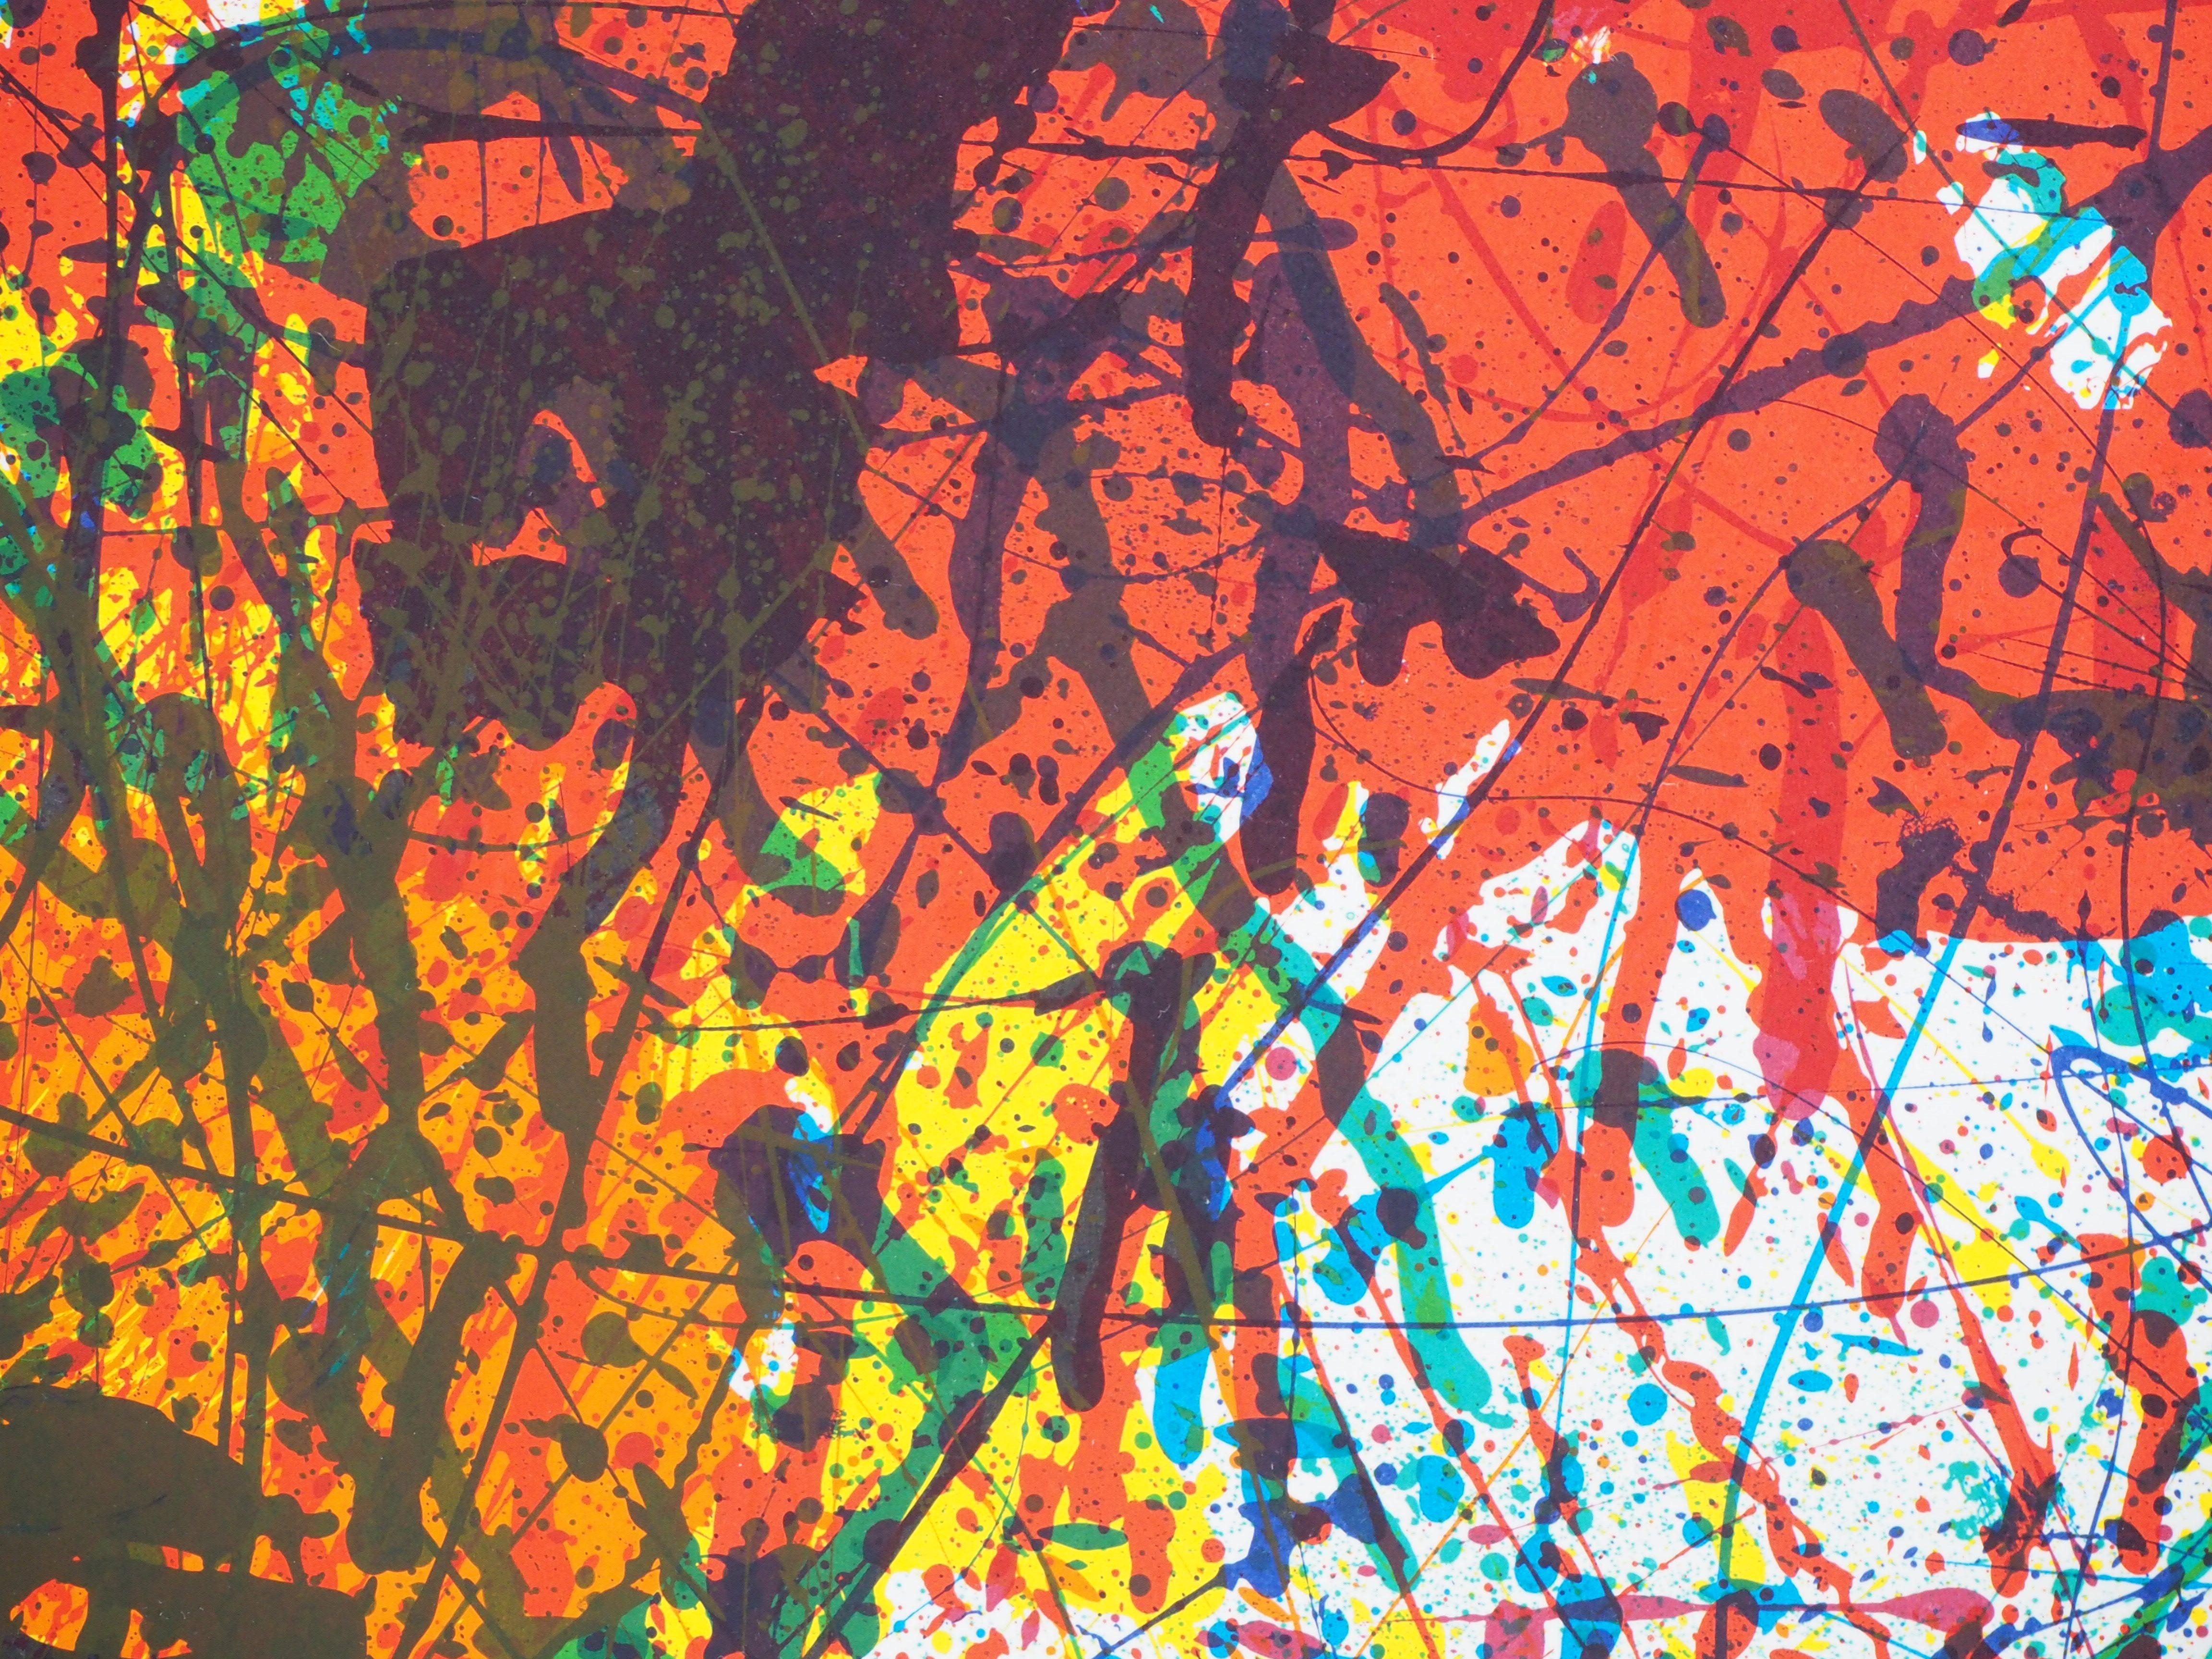 Sam FRANCIS
Explosion de couleurs (c. 1983)

Lithographie originale
Non signé tel que publié
Sur papier épais 89.5 x 54 cm (c. 36 x 21 inch)
Affiche lithographique originale pour la rétrospective de l'artiste à la fondation Maeght en 1983

Excellent